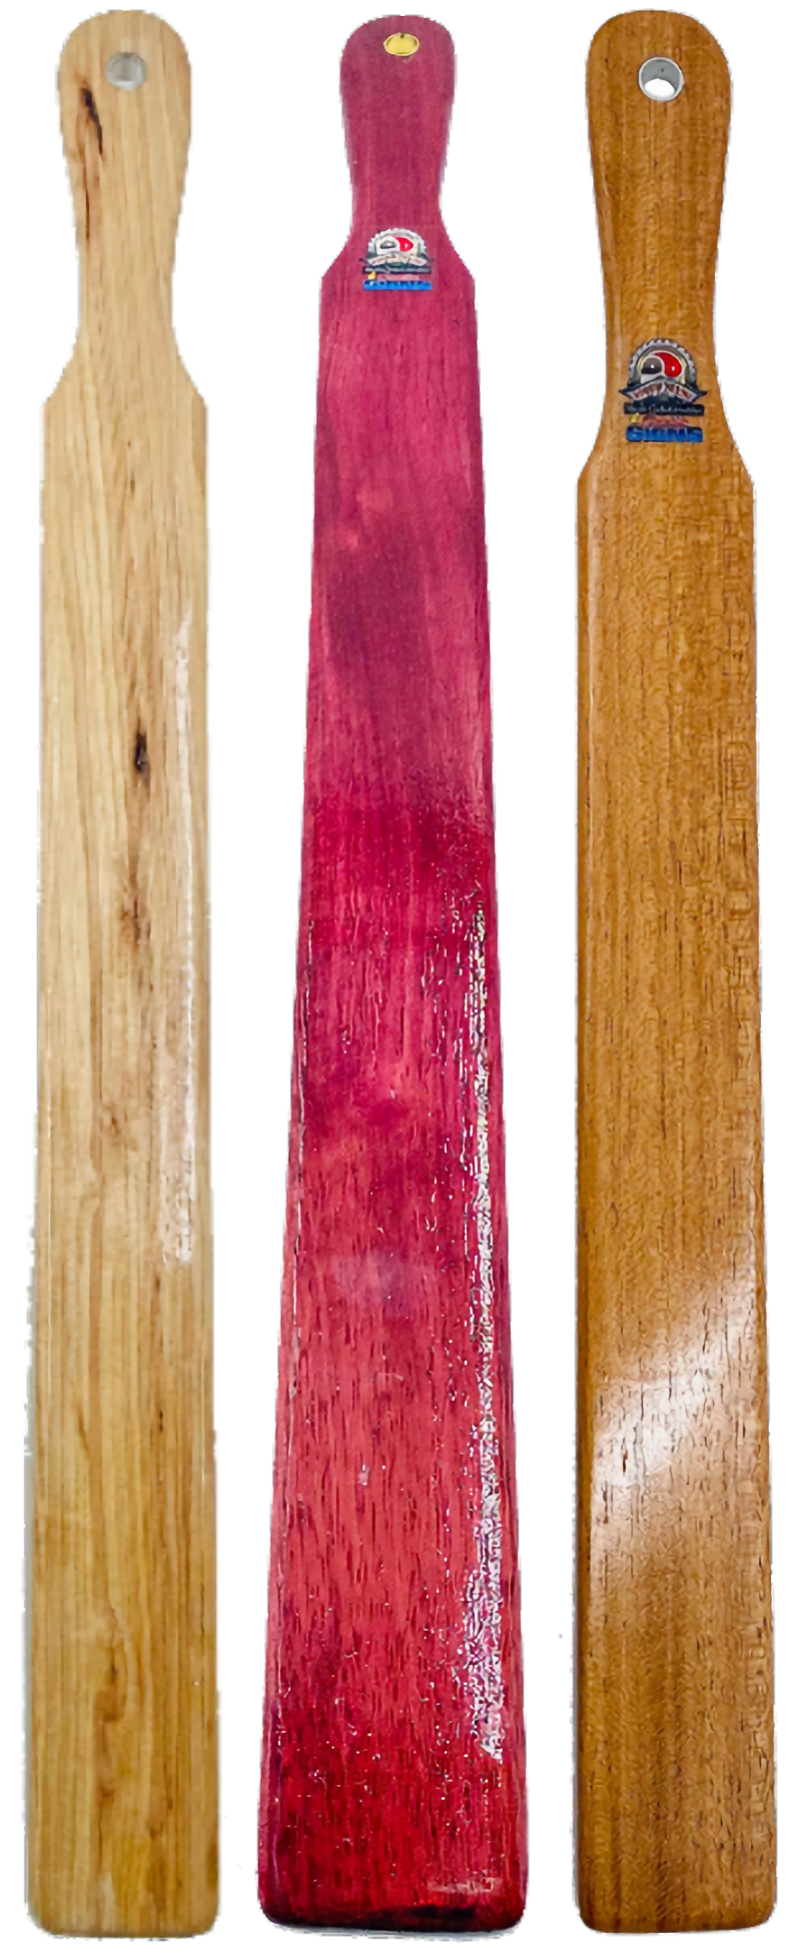 OTK Thin Hardwood Ruler Spanking Paddle, hardwood paddle, wood paddle, paddle, spanking paddle, paddle, bdsm, impact, punishment, discipline